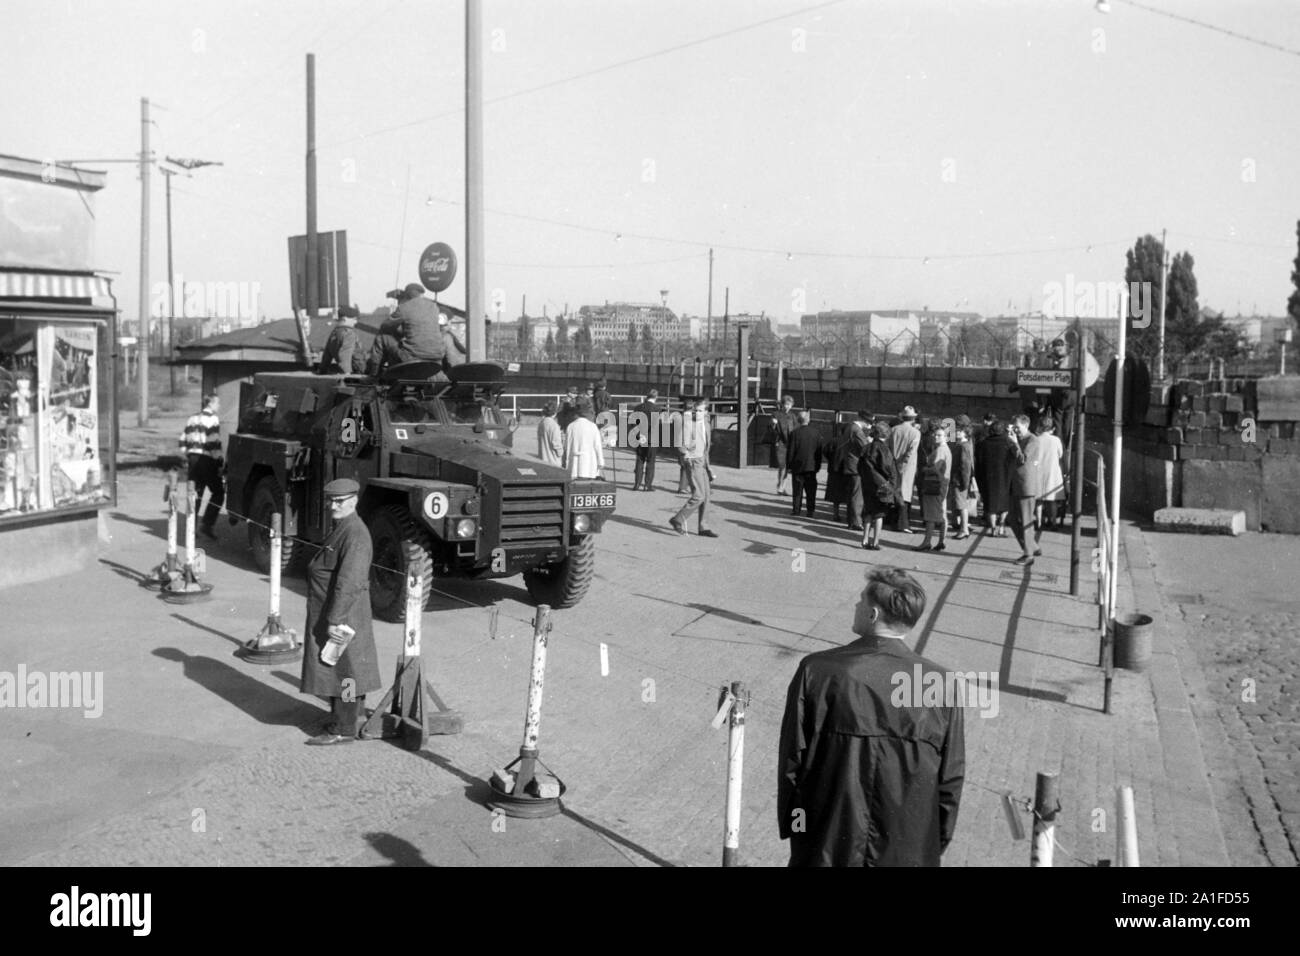 Menschen am Potsdamer Platz in Berlin mit alliiertem Militärfahrzeug, Deutschland 1962. People at Potsdamer Platz square in Berlin with Allied military vehicle, Germany 1962. Stock Photo